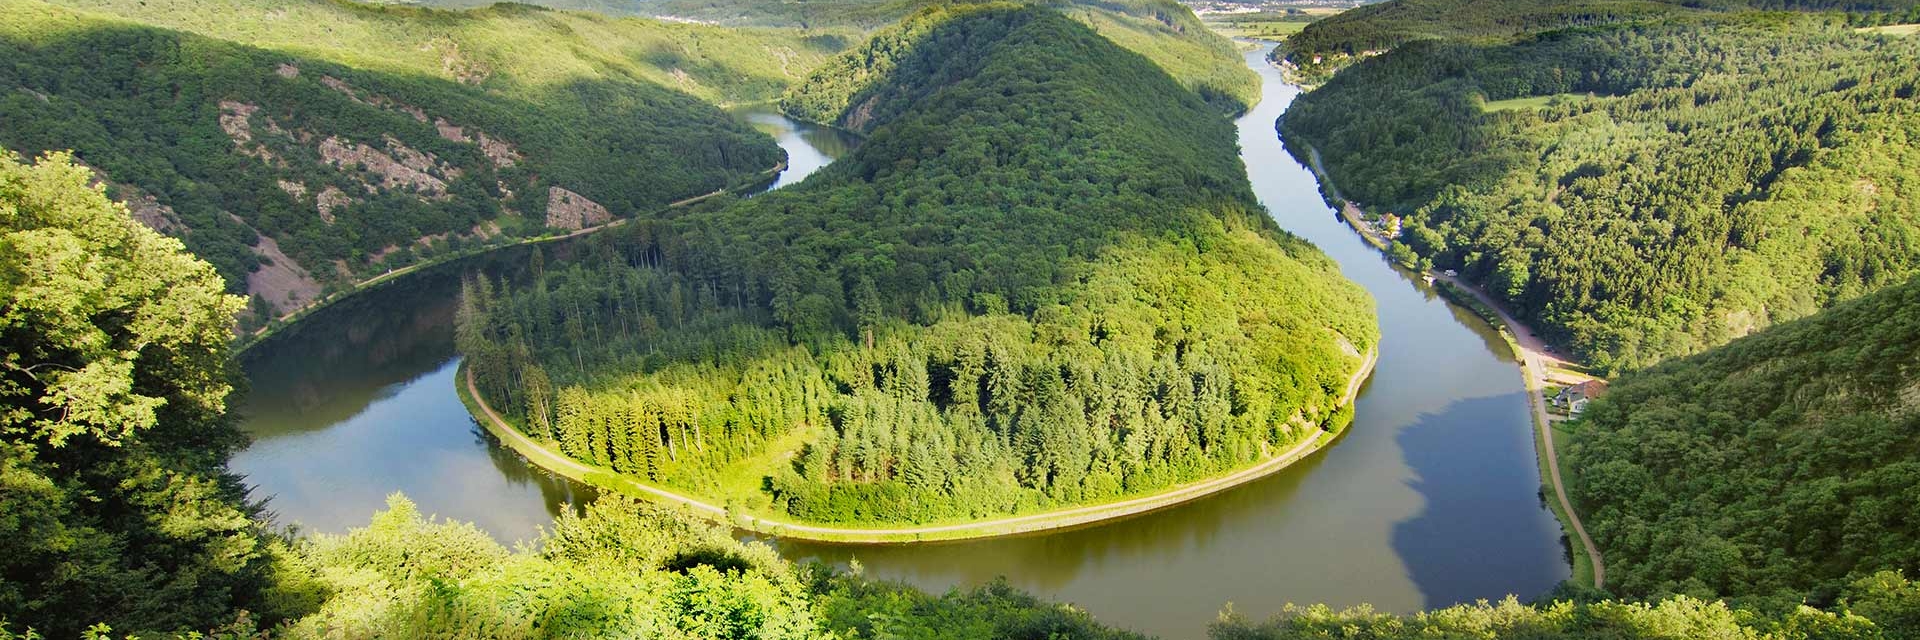 Изгиб реки сканворд. Саар (приток Мозеля). Самая длинная река ФРГ. Реки и озера Германии. Главная река Германии.